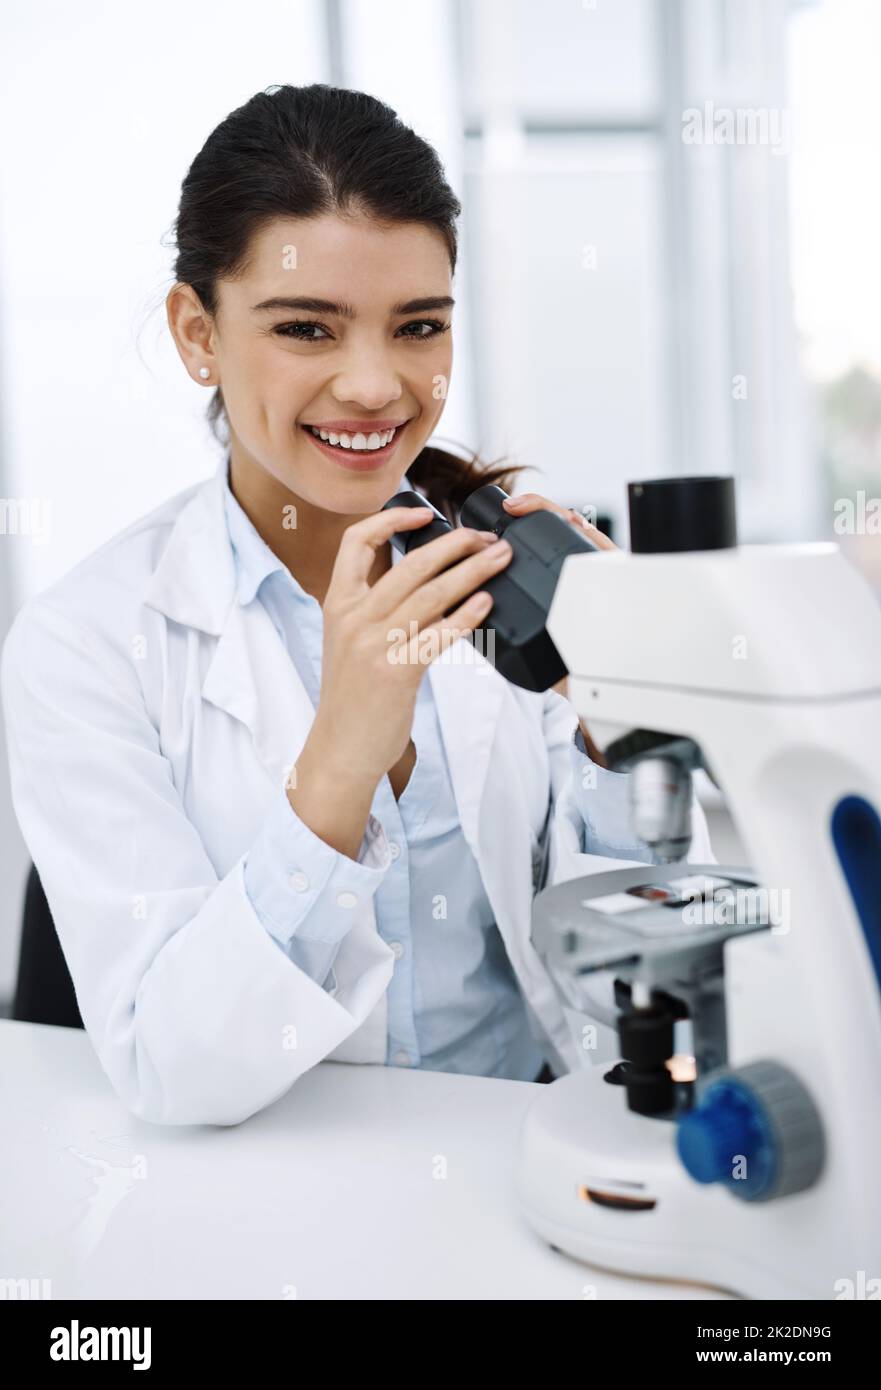 J'ai toujours été curieux du monde. Prise de vue d'un jeune scientifique utilisant un microscope dans un laboratoire. Banque D'Images